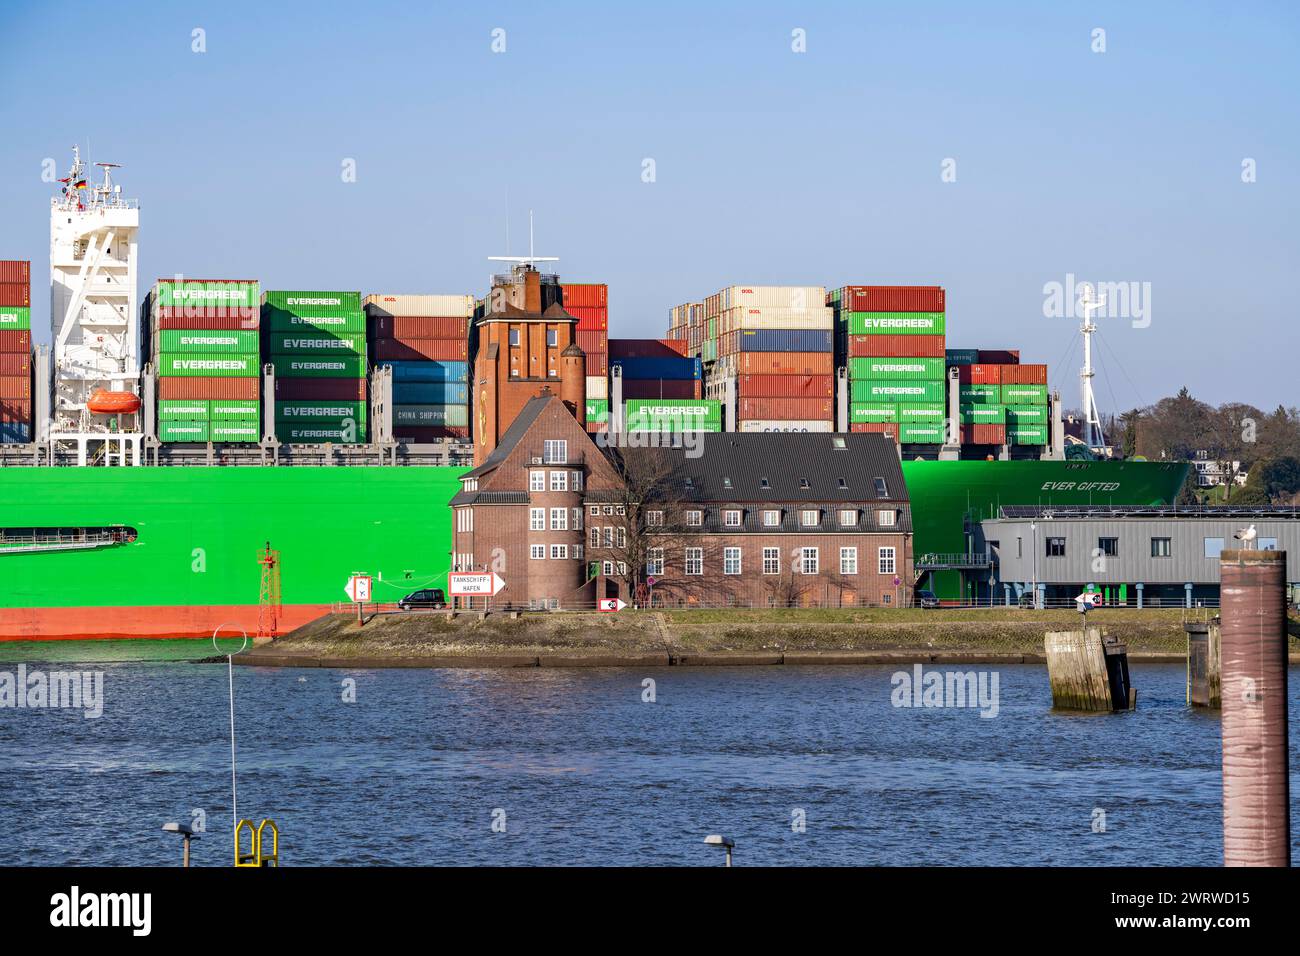 Containerschiff, das jemals begabt ist, fährt in den Hamburger Hafen an der Elbe ein, die Reederei Evergreen, Singapur, 399 m lang, kann über 20.000 Container transportieren Stockfoto